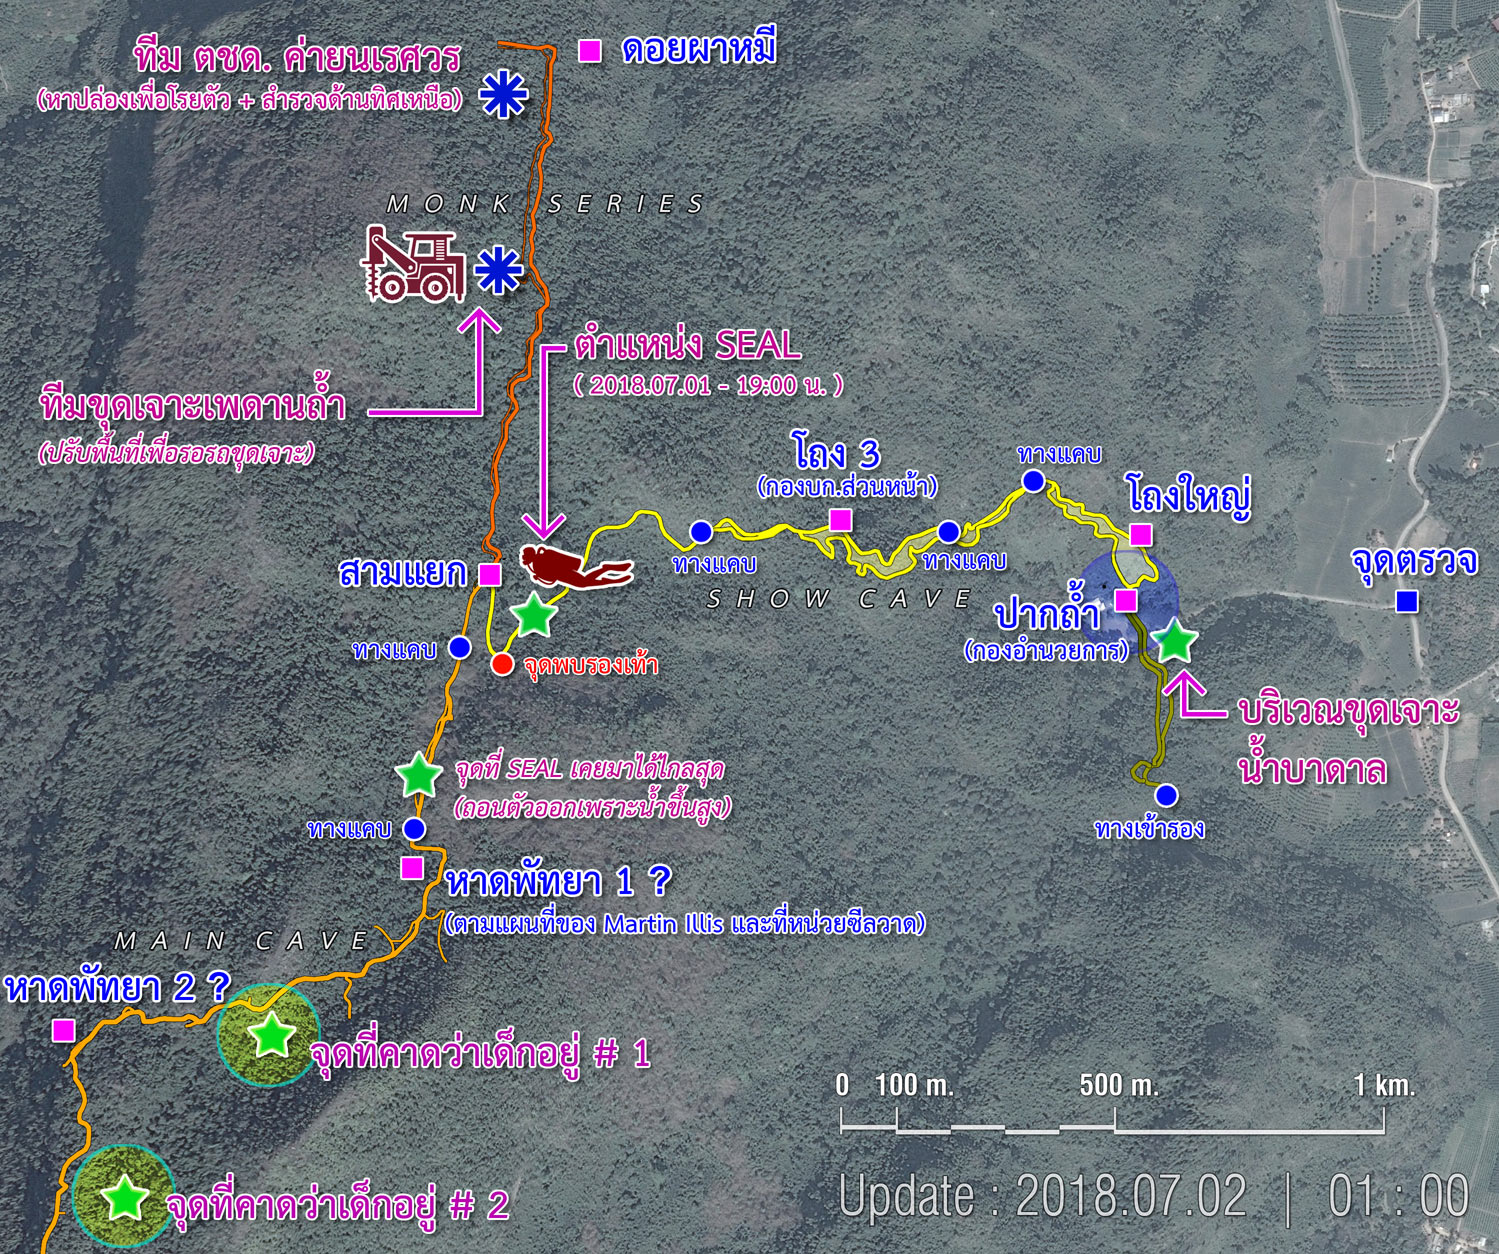 Cave map by Pantip member 2085974